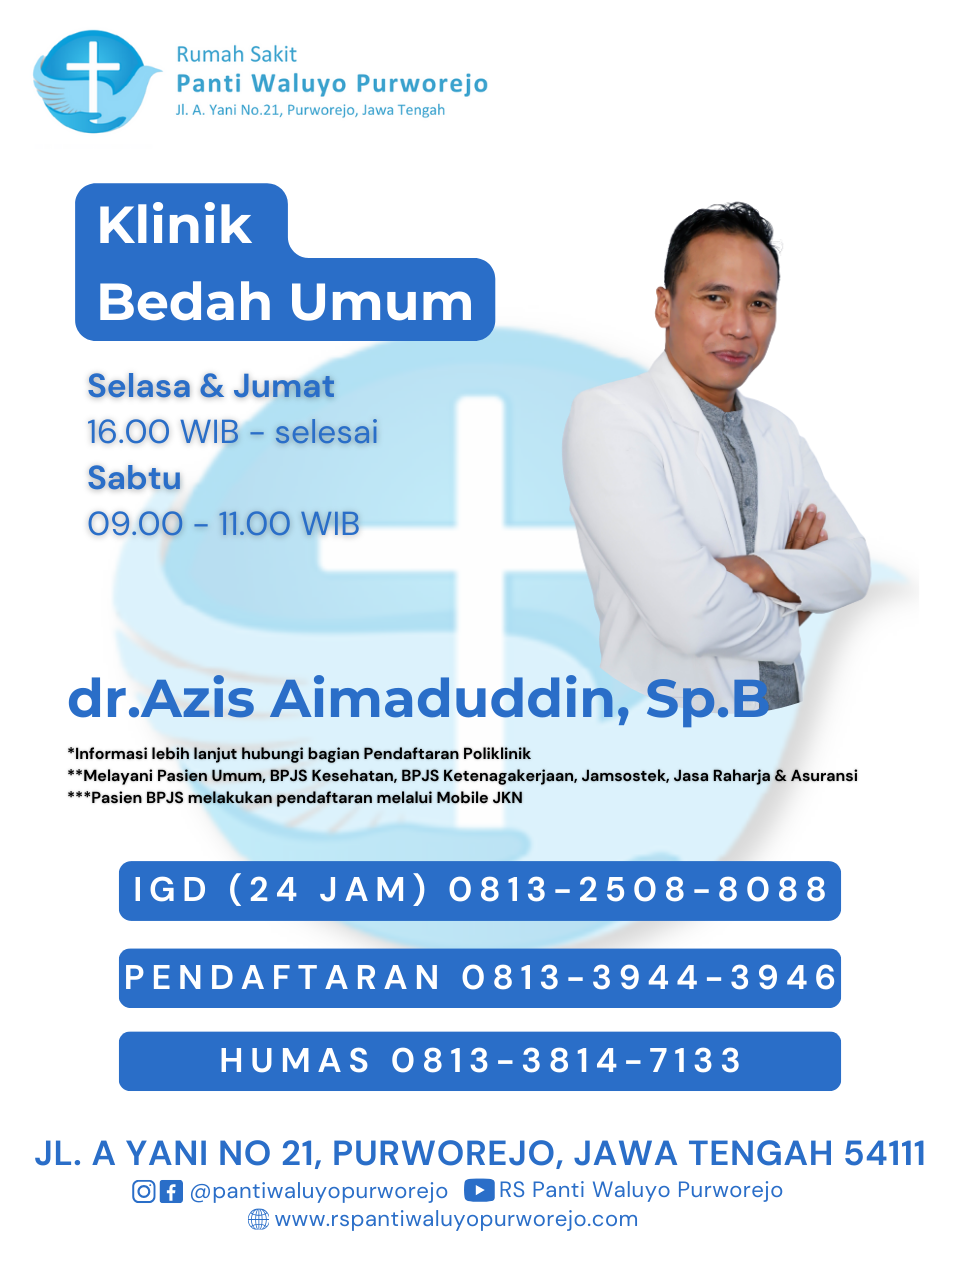 dr. Aziz Aimaduddin, Sp.B